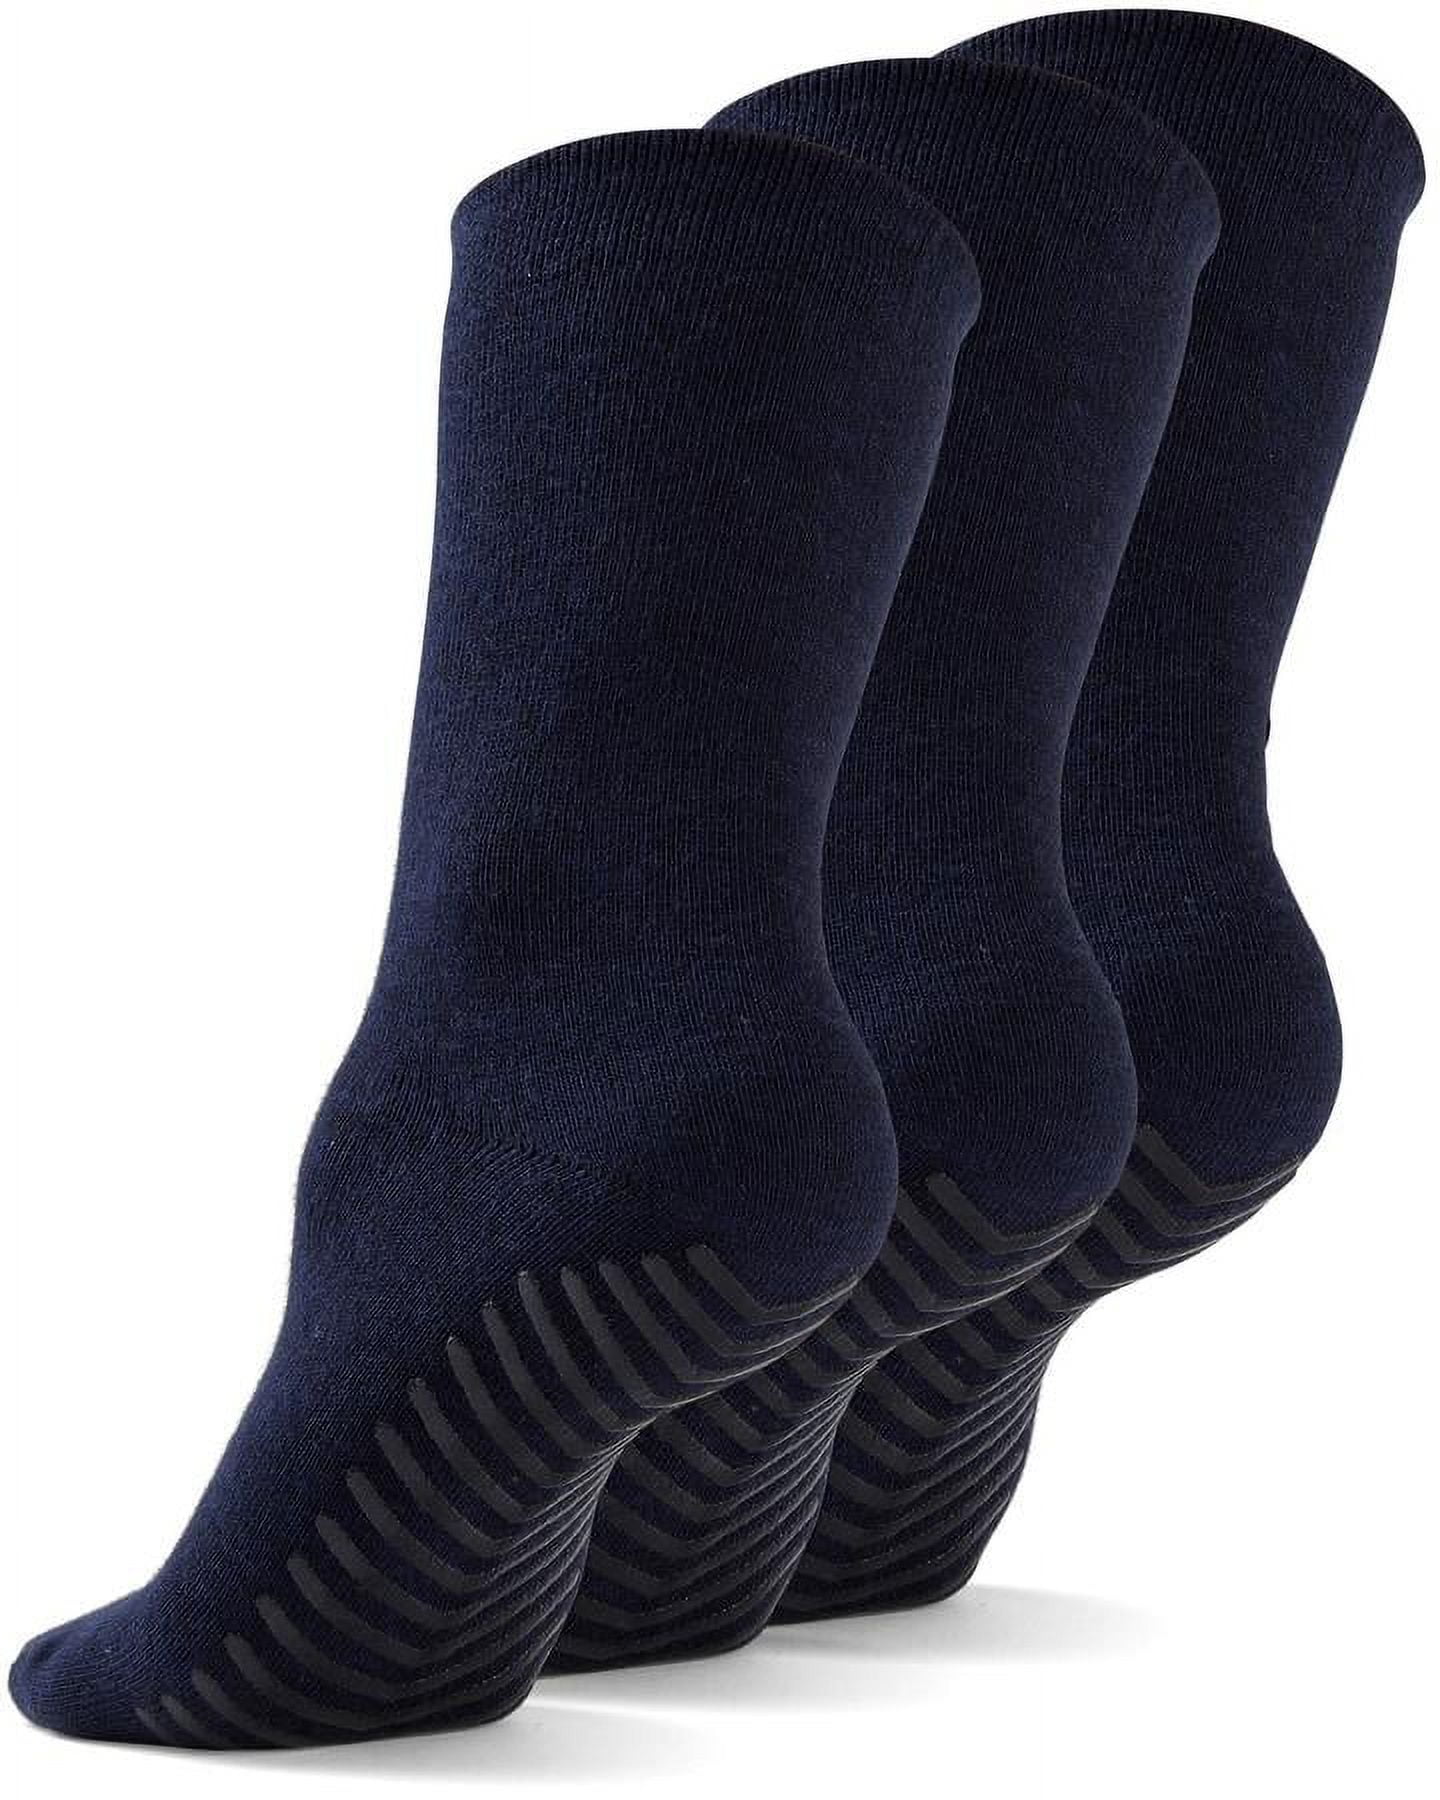 Deefly 3pairs Women'S Non-Slip Grip Socks For Home, Hospital